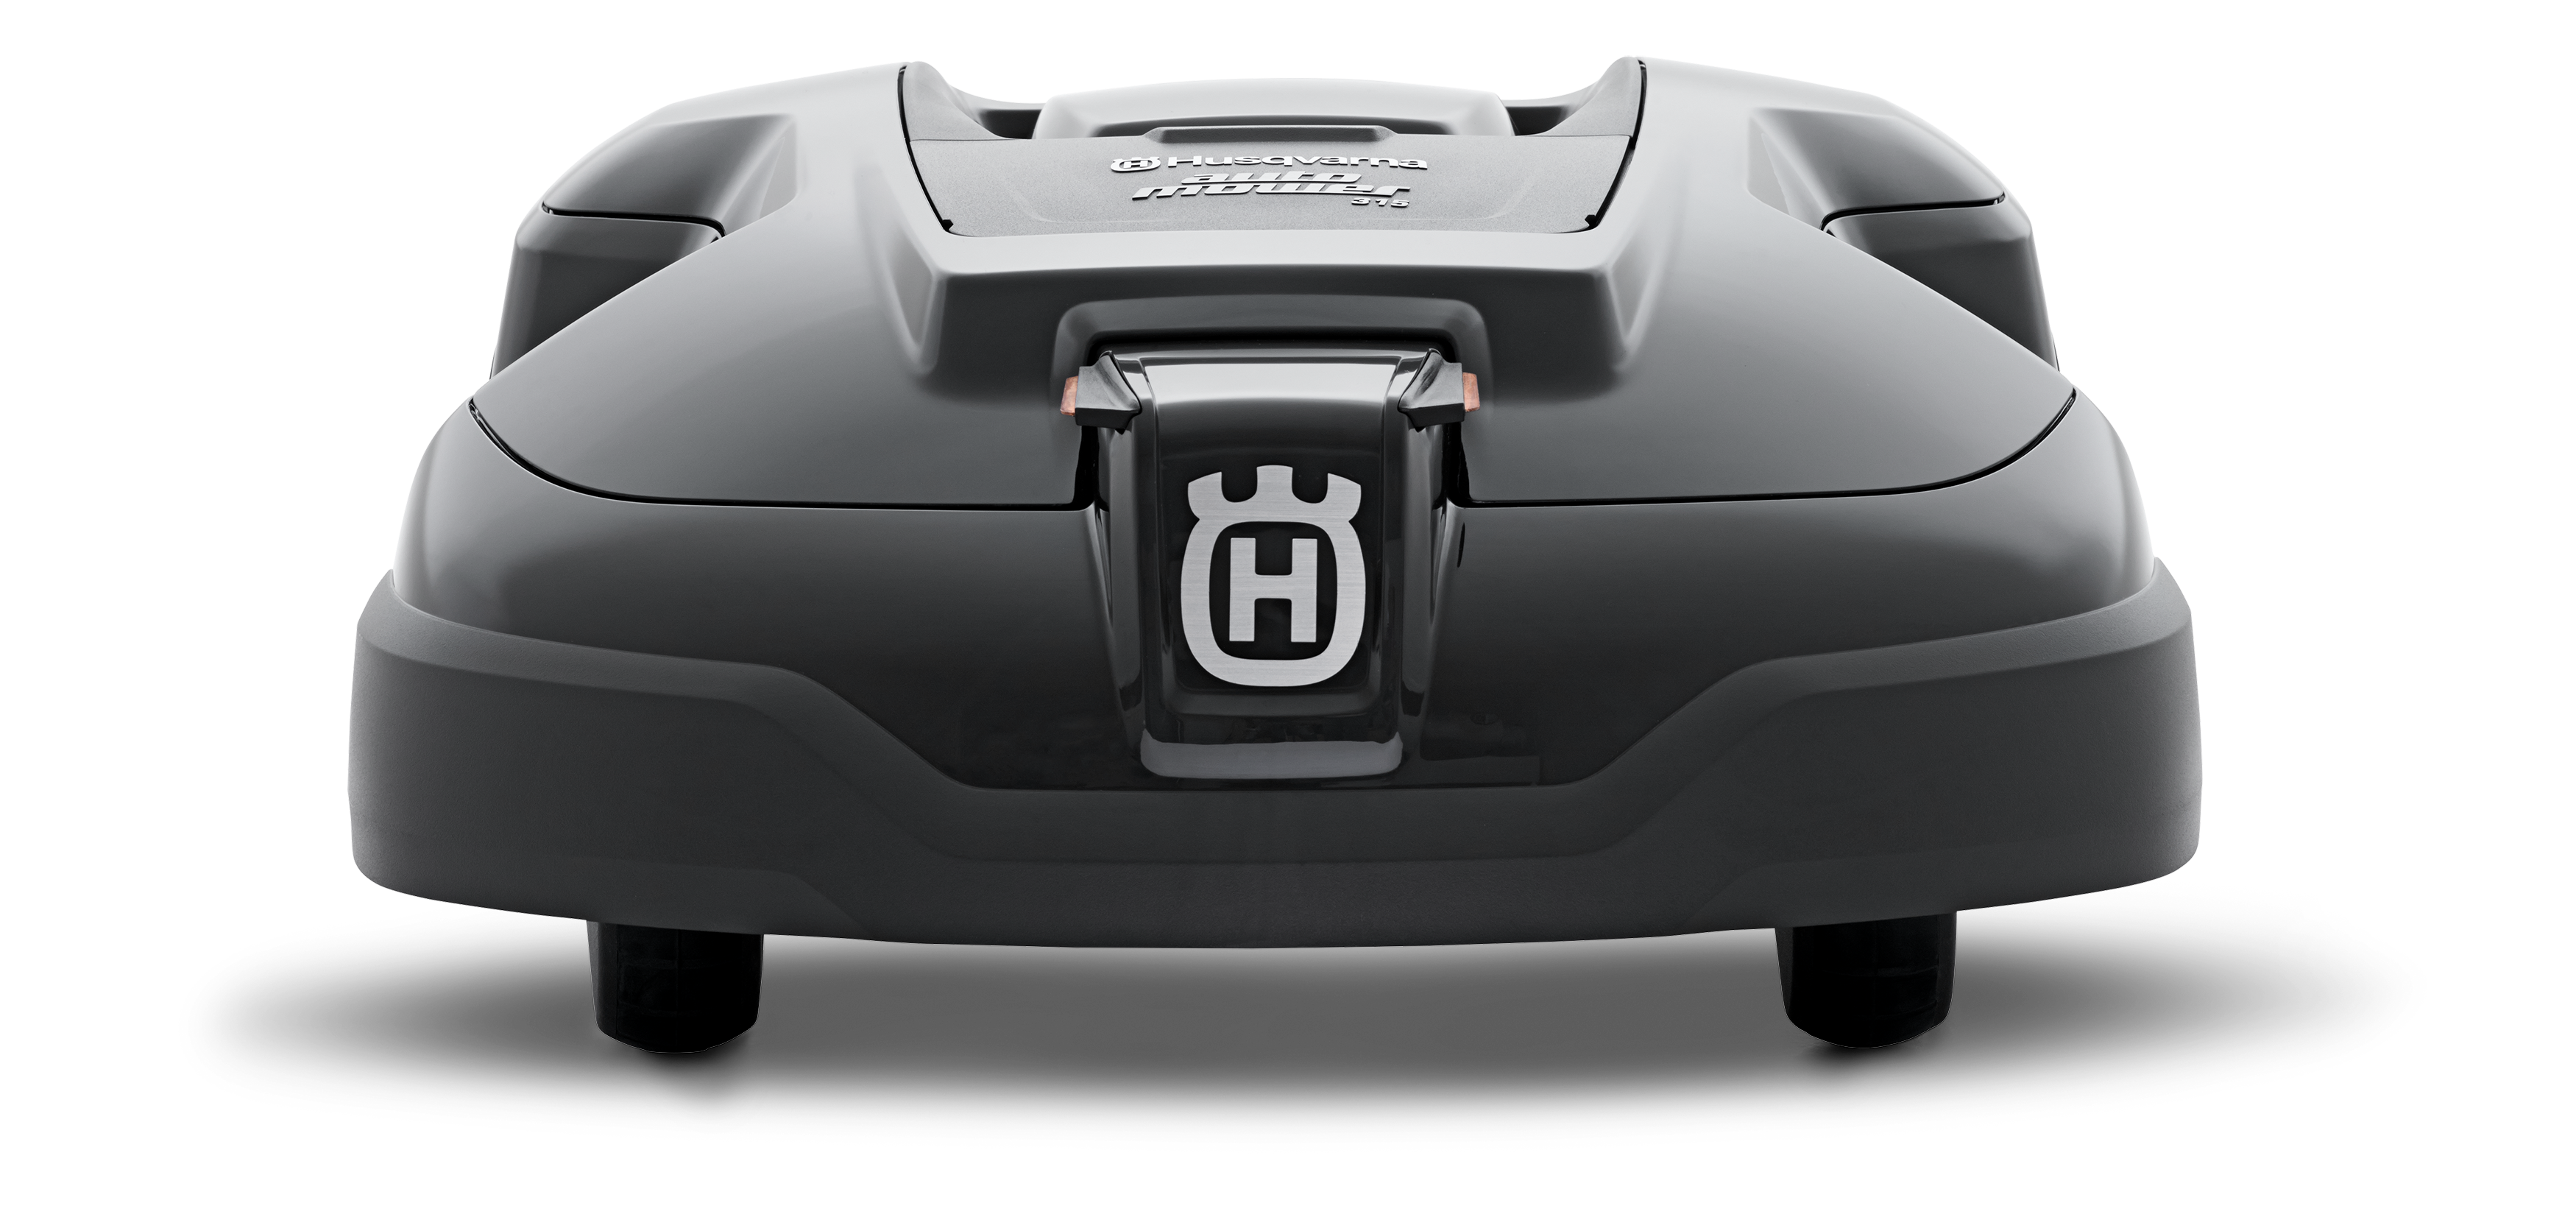 Melns Husqvarna zāles pļāvējs robots – Automower 310 modelis, skats no aizmugures